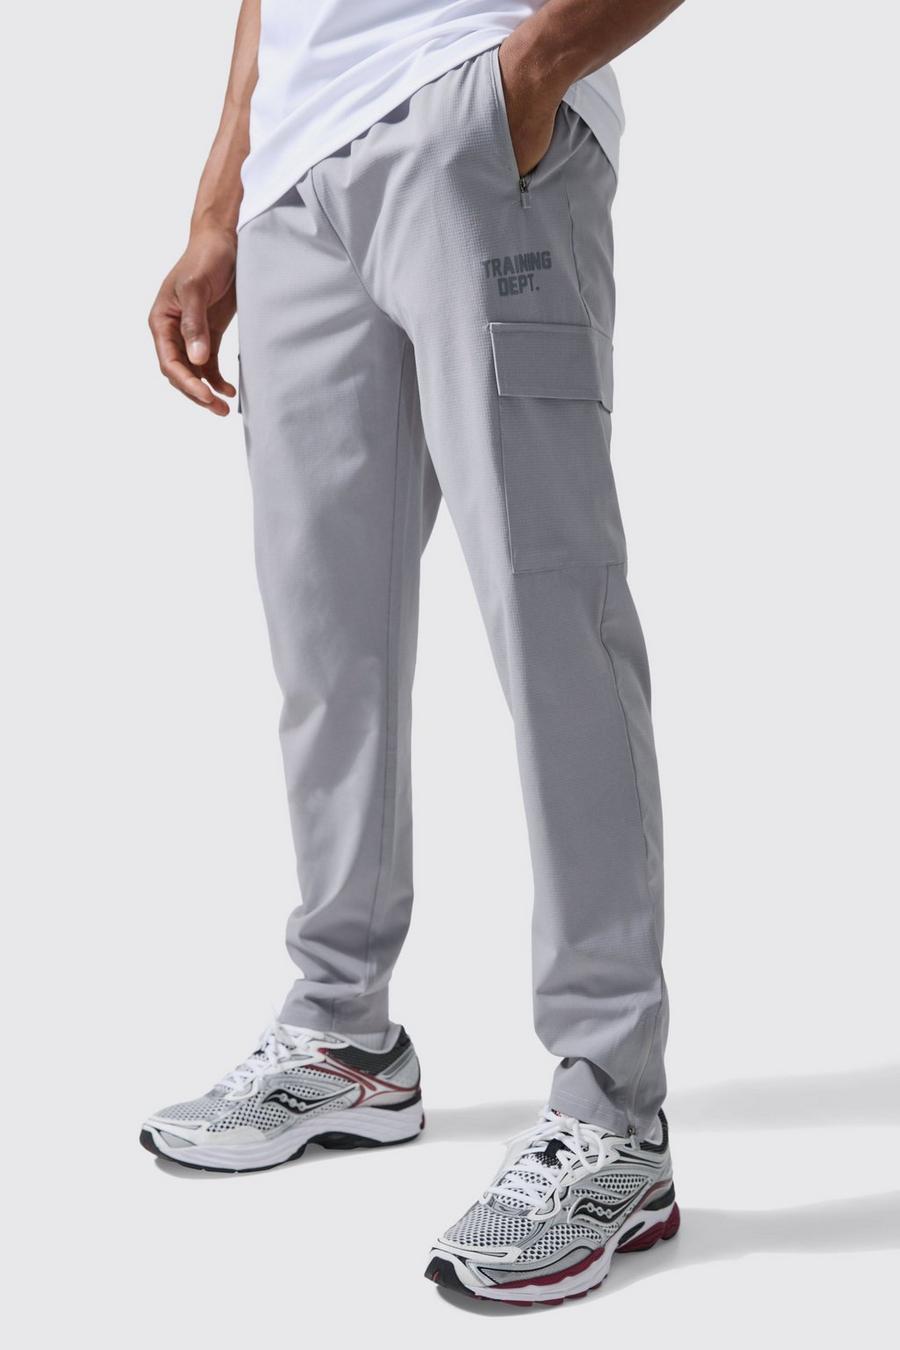 Pantalón deportivo Active cargo ajustado, Light grey